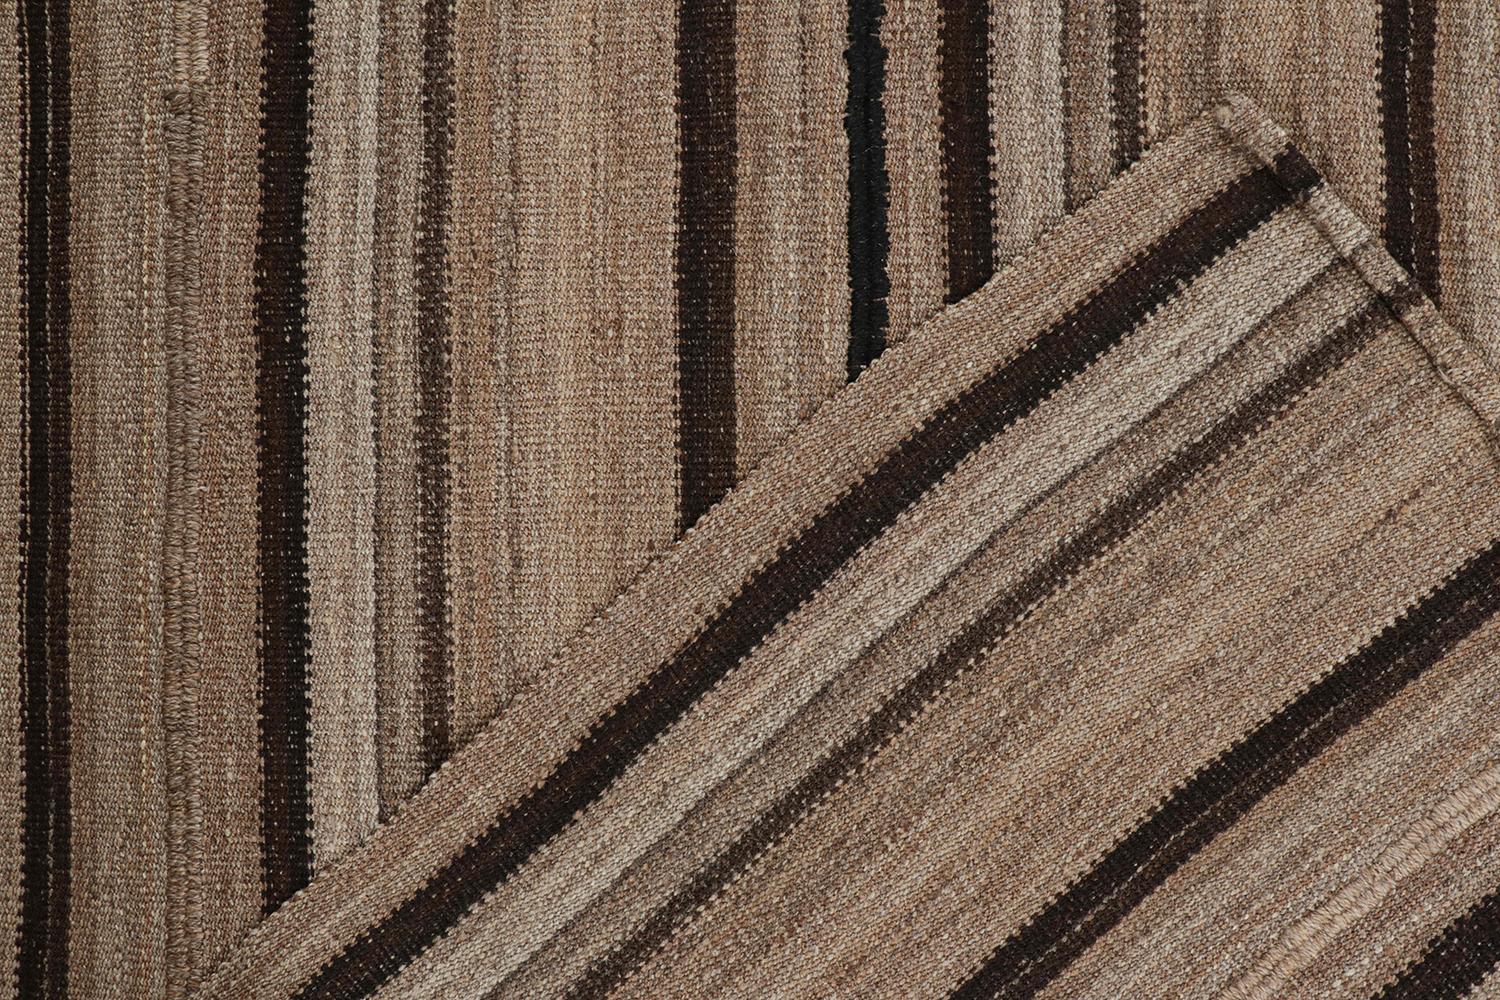 Wool Vintage Persian Kilim in Beige-Brown Stripes by Rug & Kilim For Sale